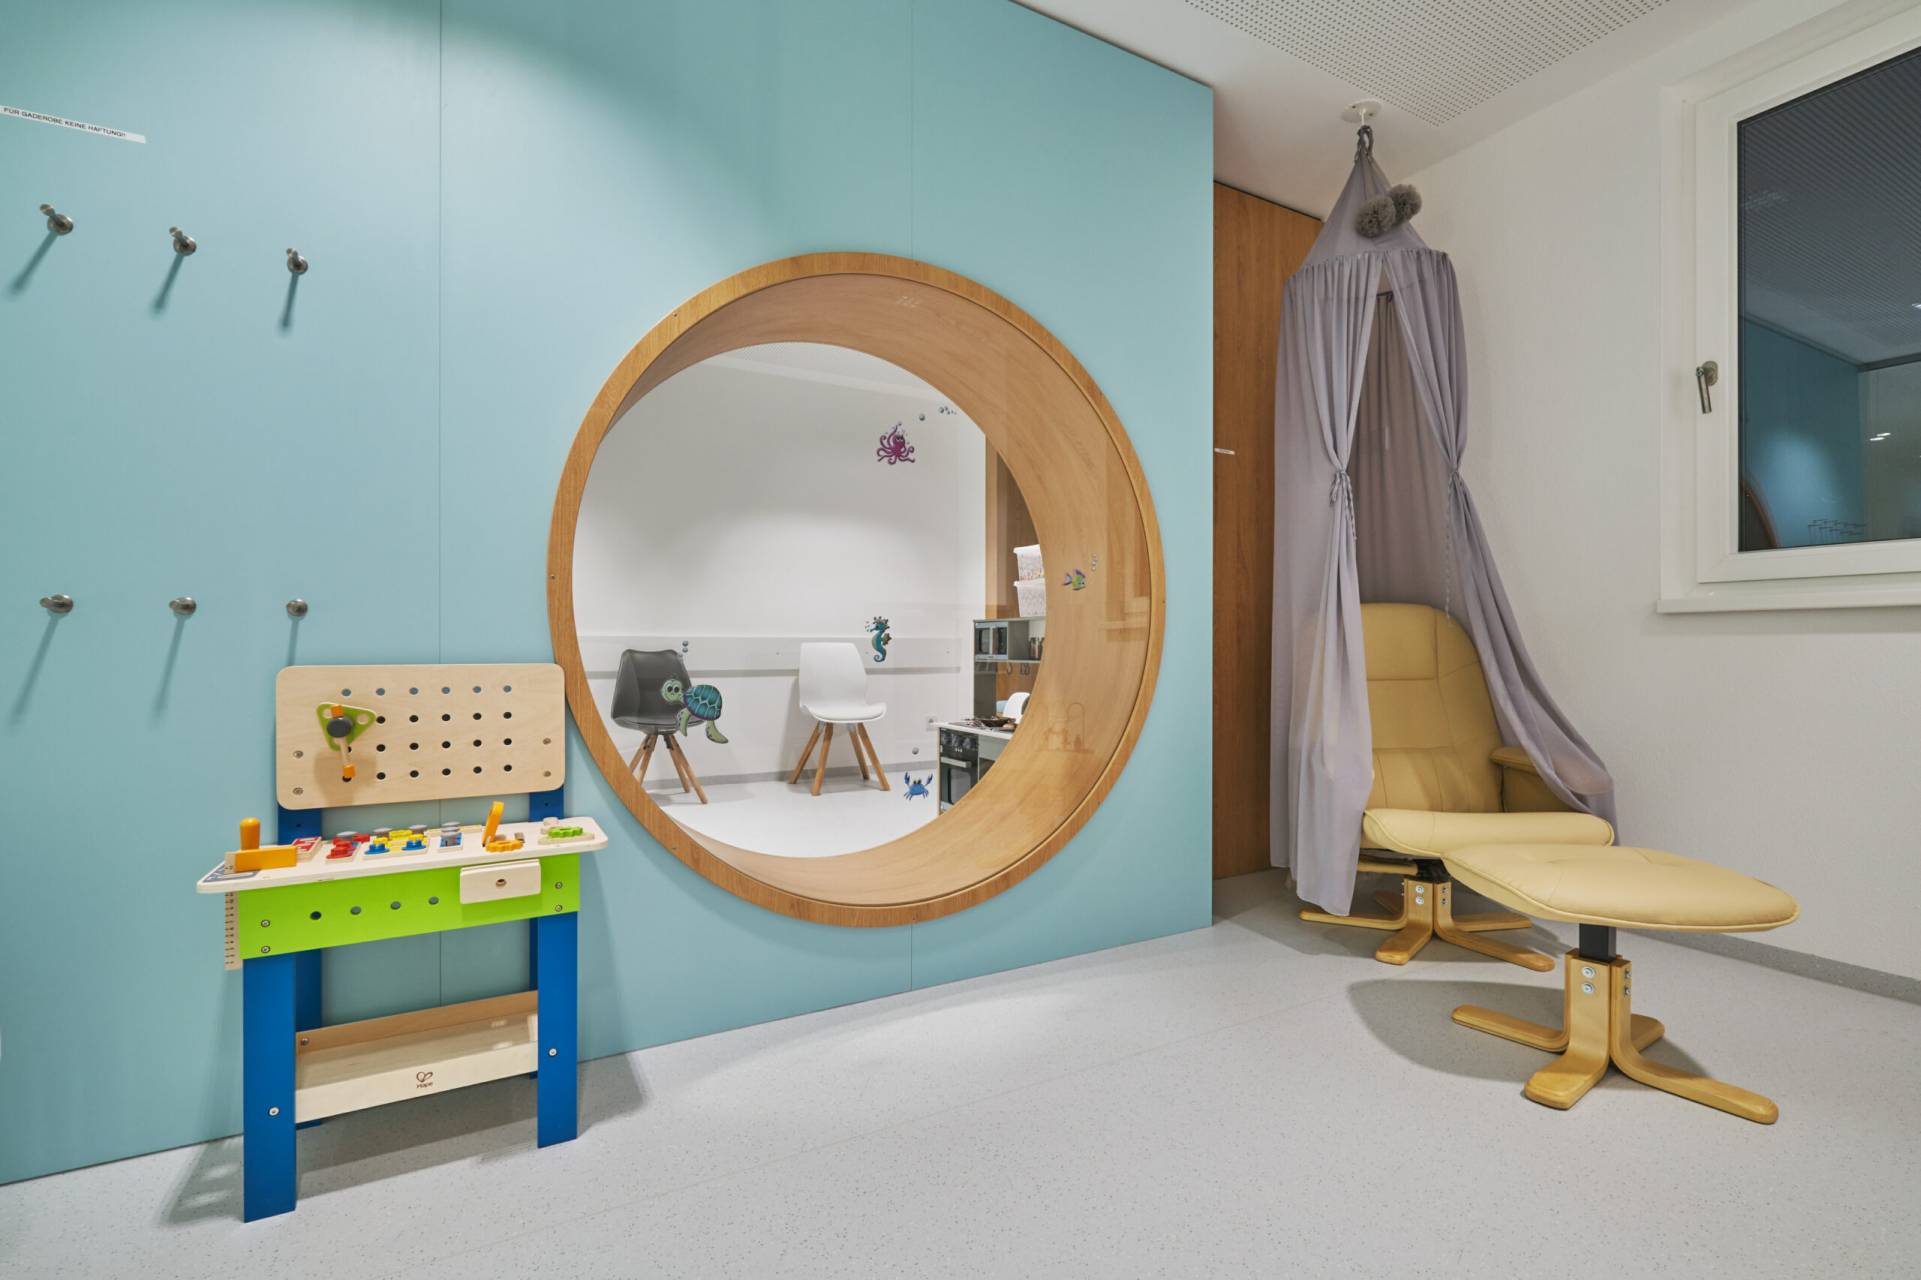 Interieur / Innanrchitektur der Kinderarztpraxis in Bogen für Planquelle, Wartezimmer mit Spielecken